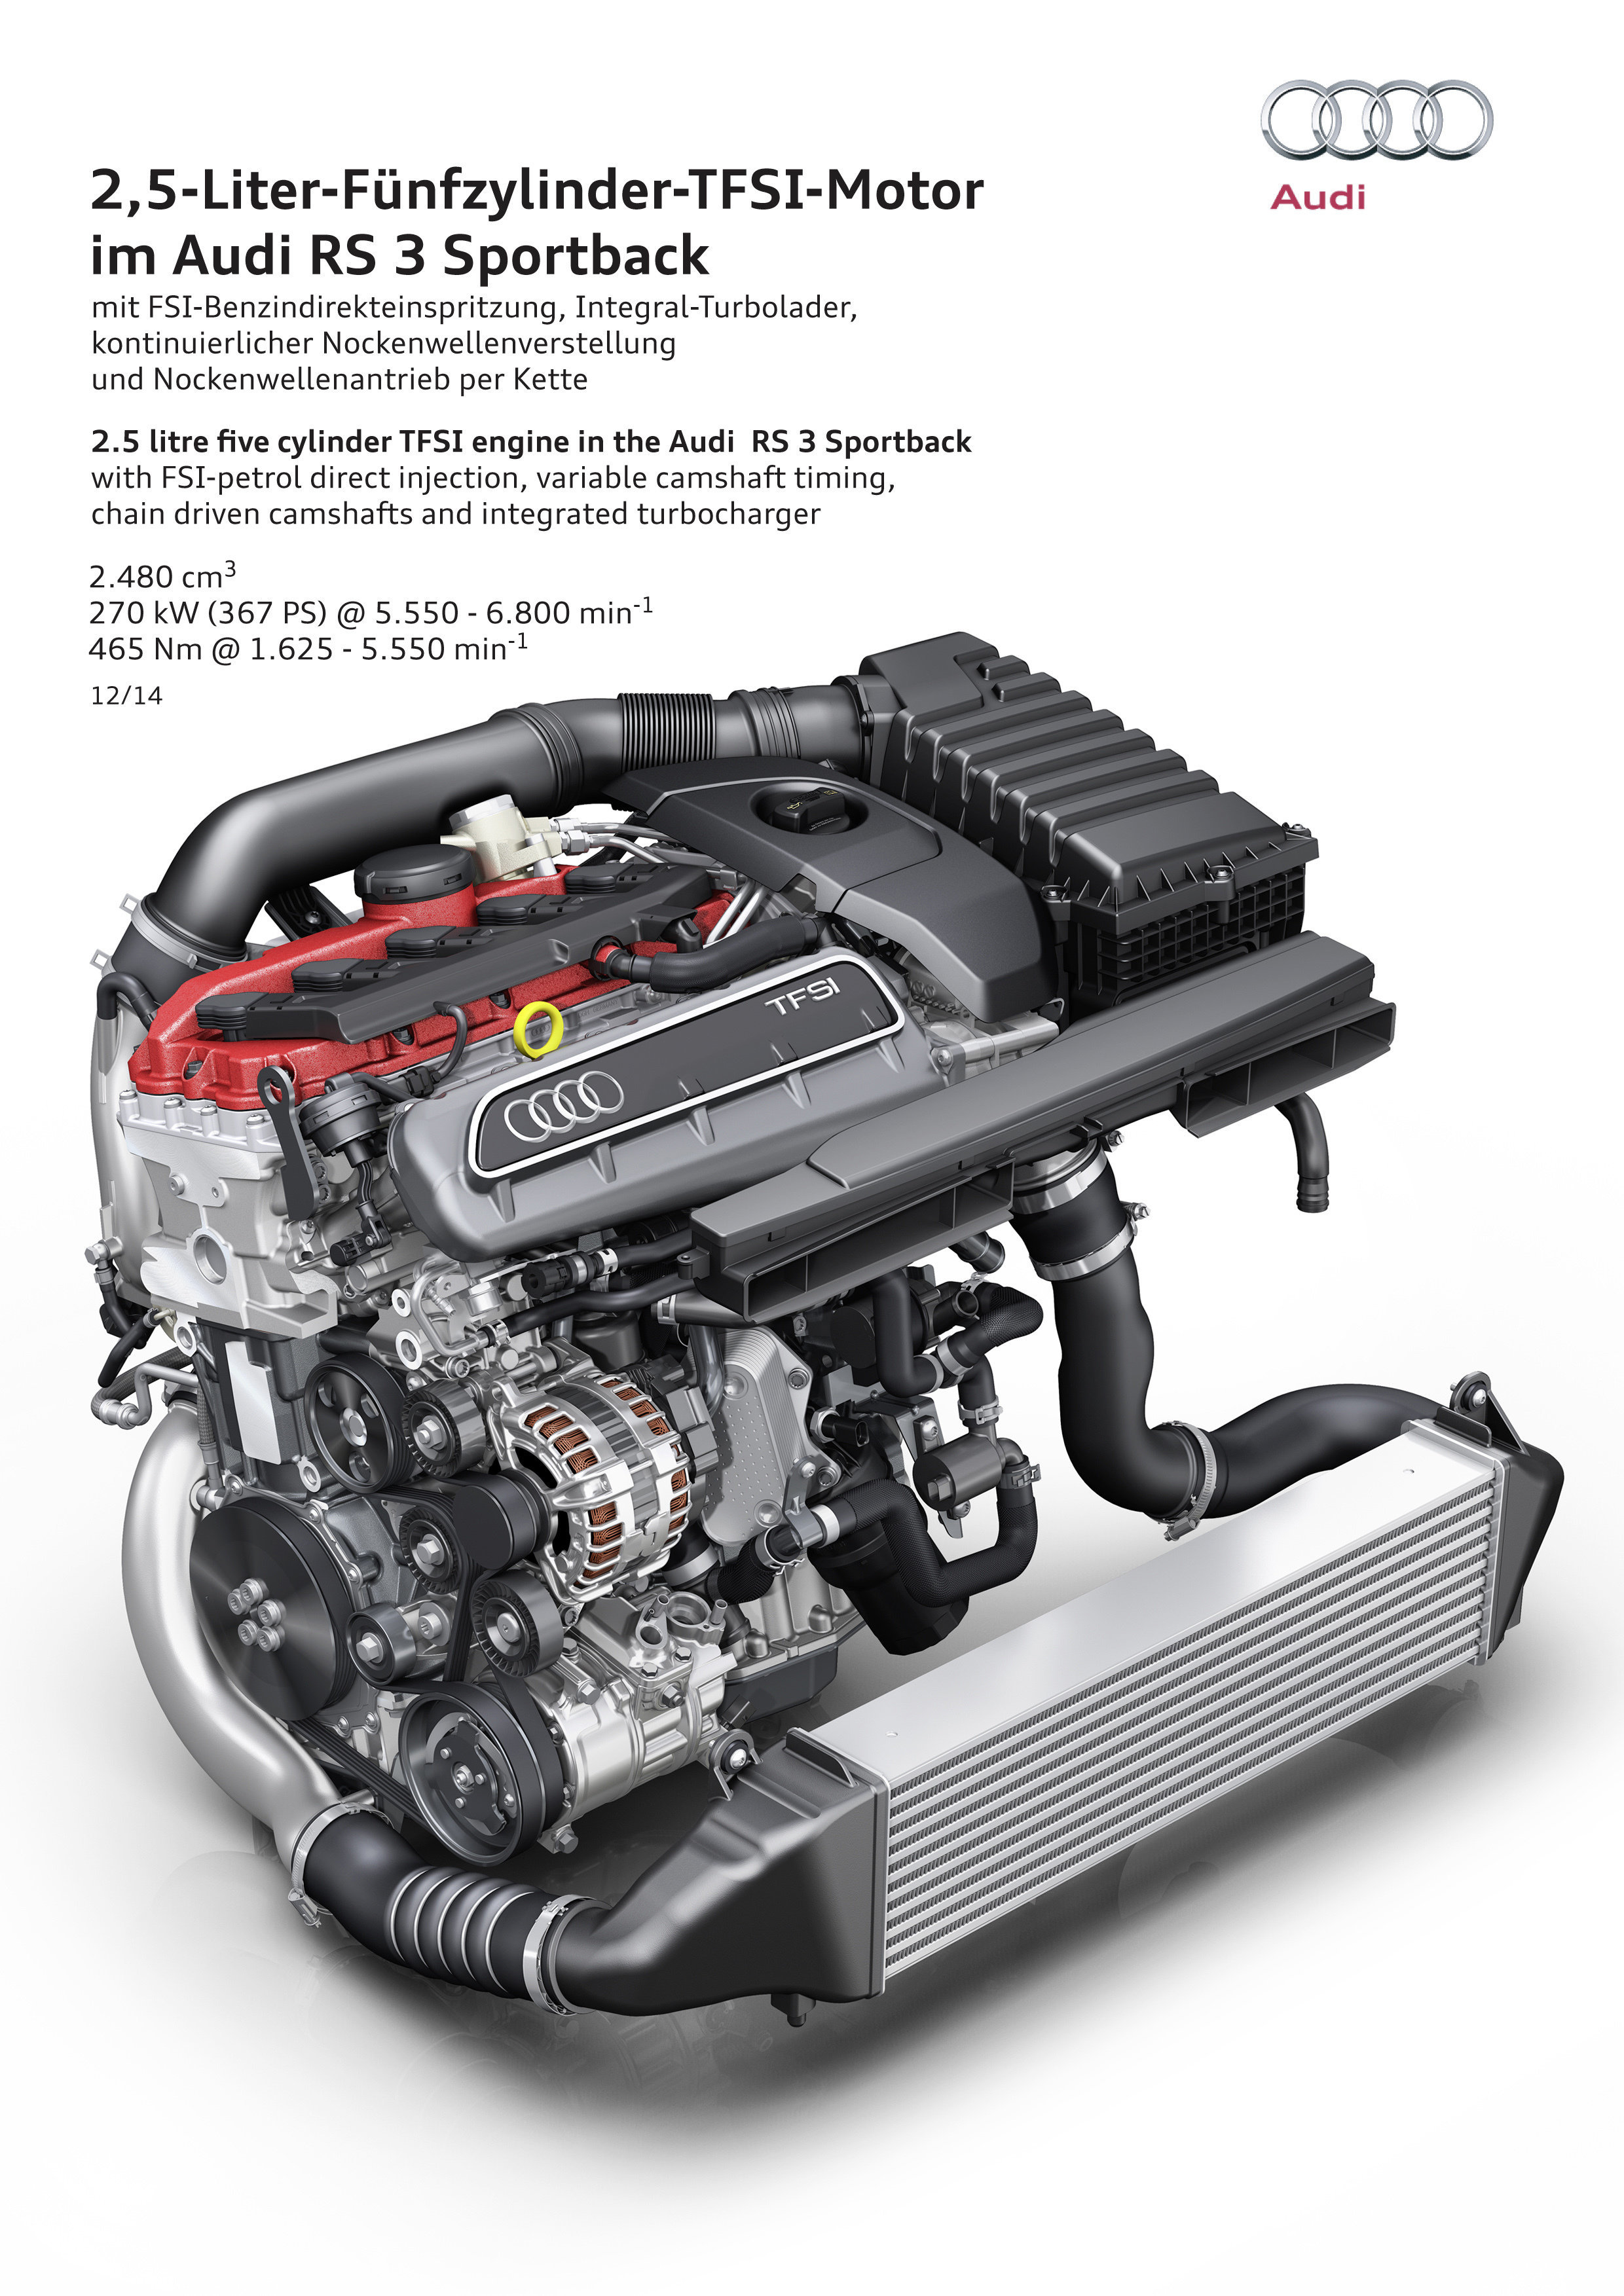 「インターナショナル エンジン オブ ザ イヤー」： アウディの2.5 TFSIがクラス最高のエンジンに再び選出